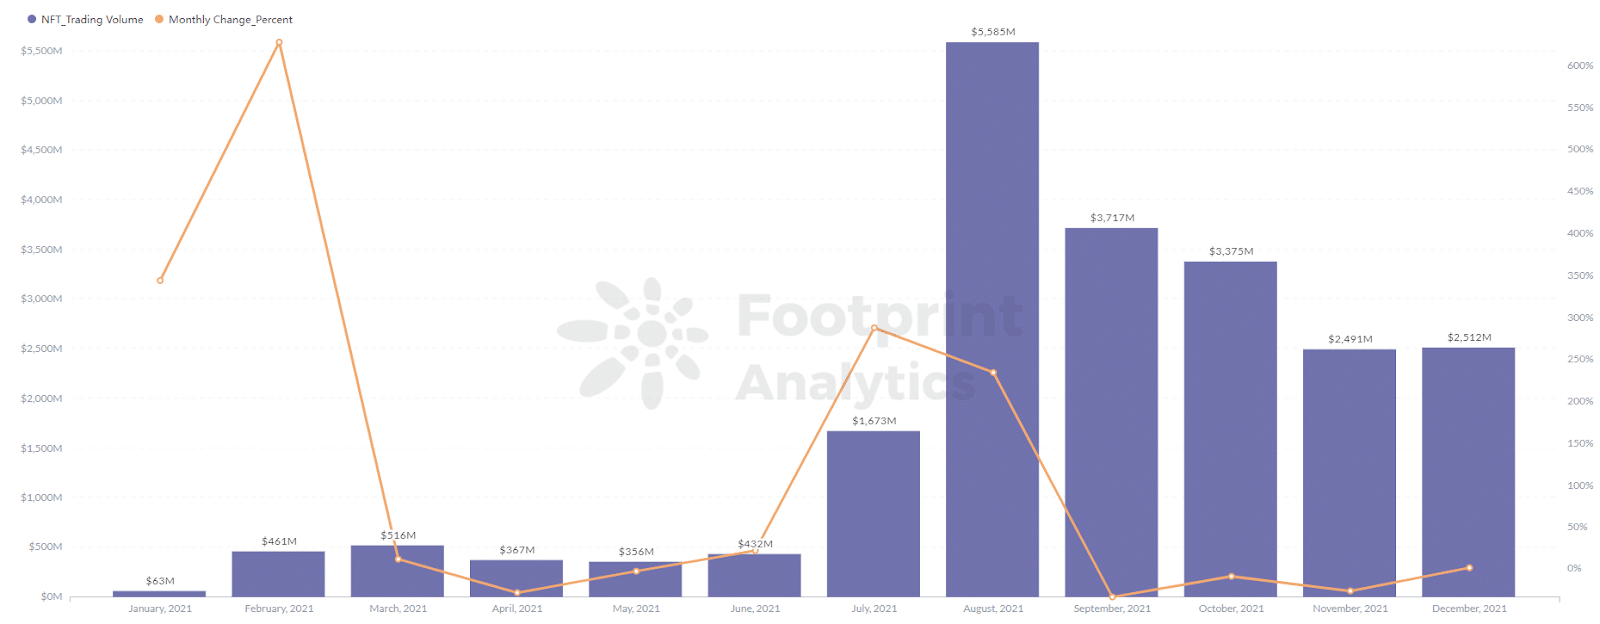 Footprint Analytics - Le volume d'échange des projets NFT a atteint un pic à 5 586 millions en août